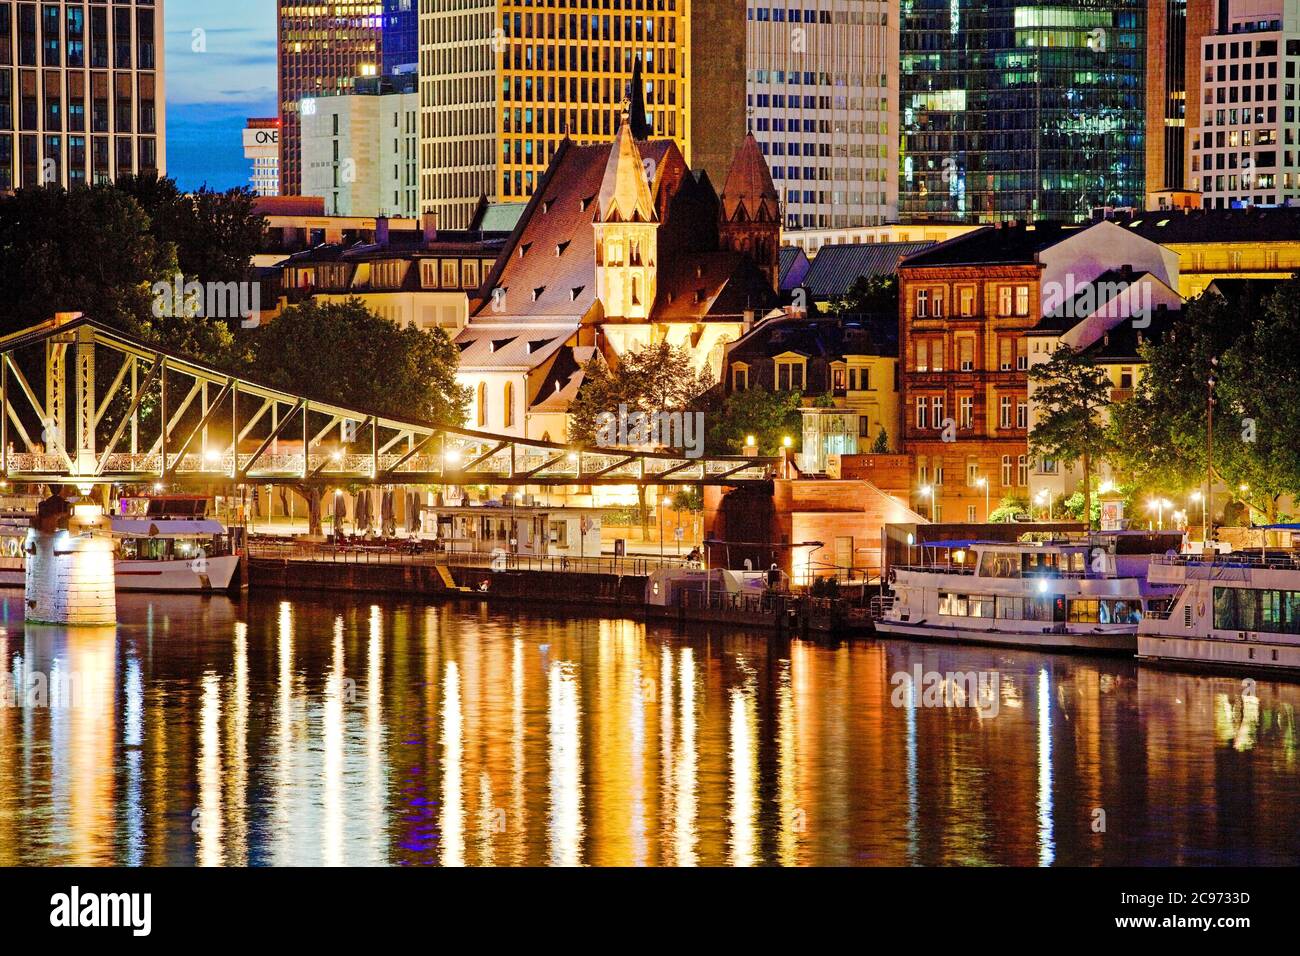 Paisaje urbano por la noche con el distrito financiero y principal, Alemania, Hesse, Frankfurt am Main Foto de stock